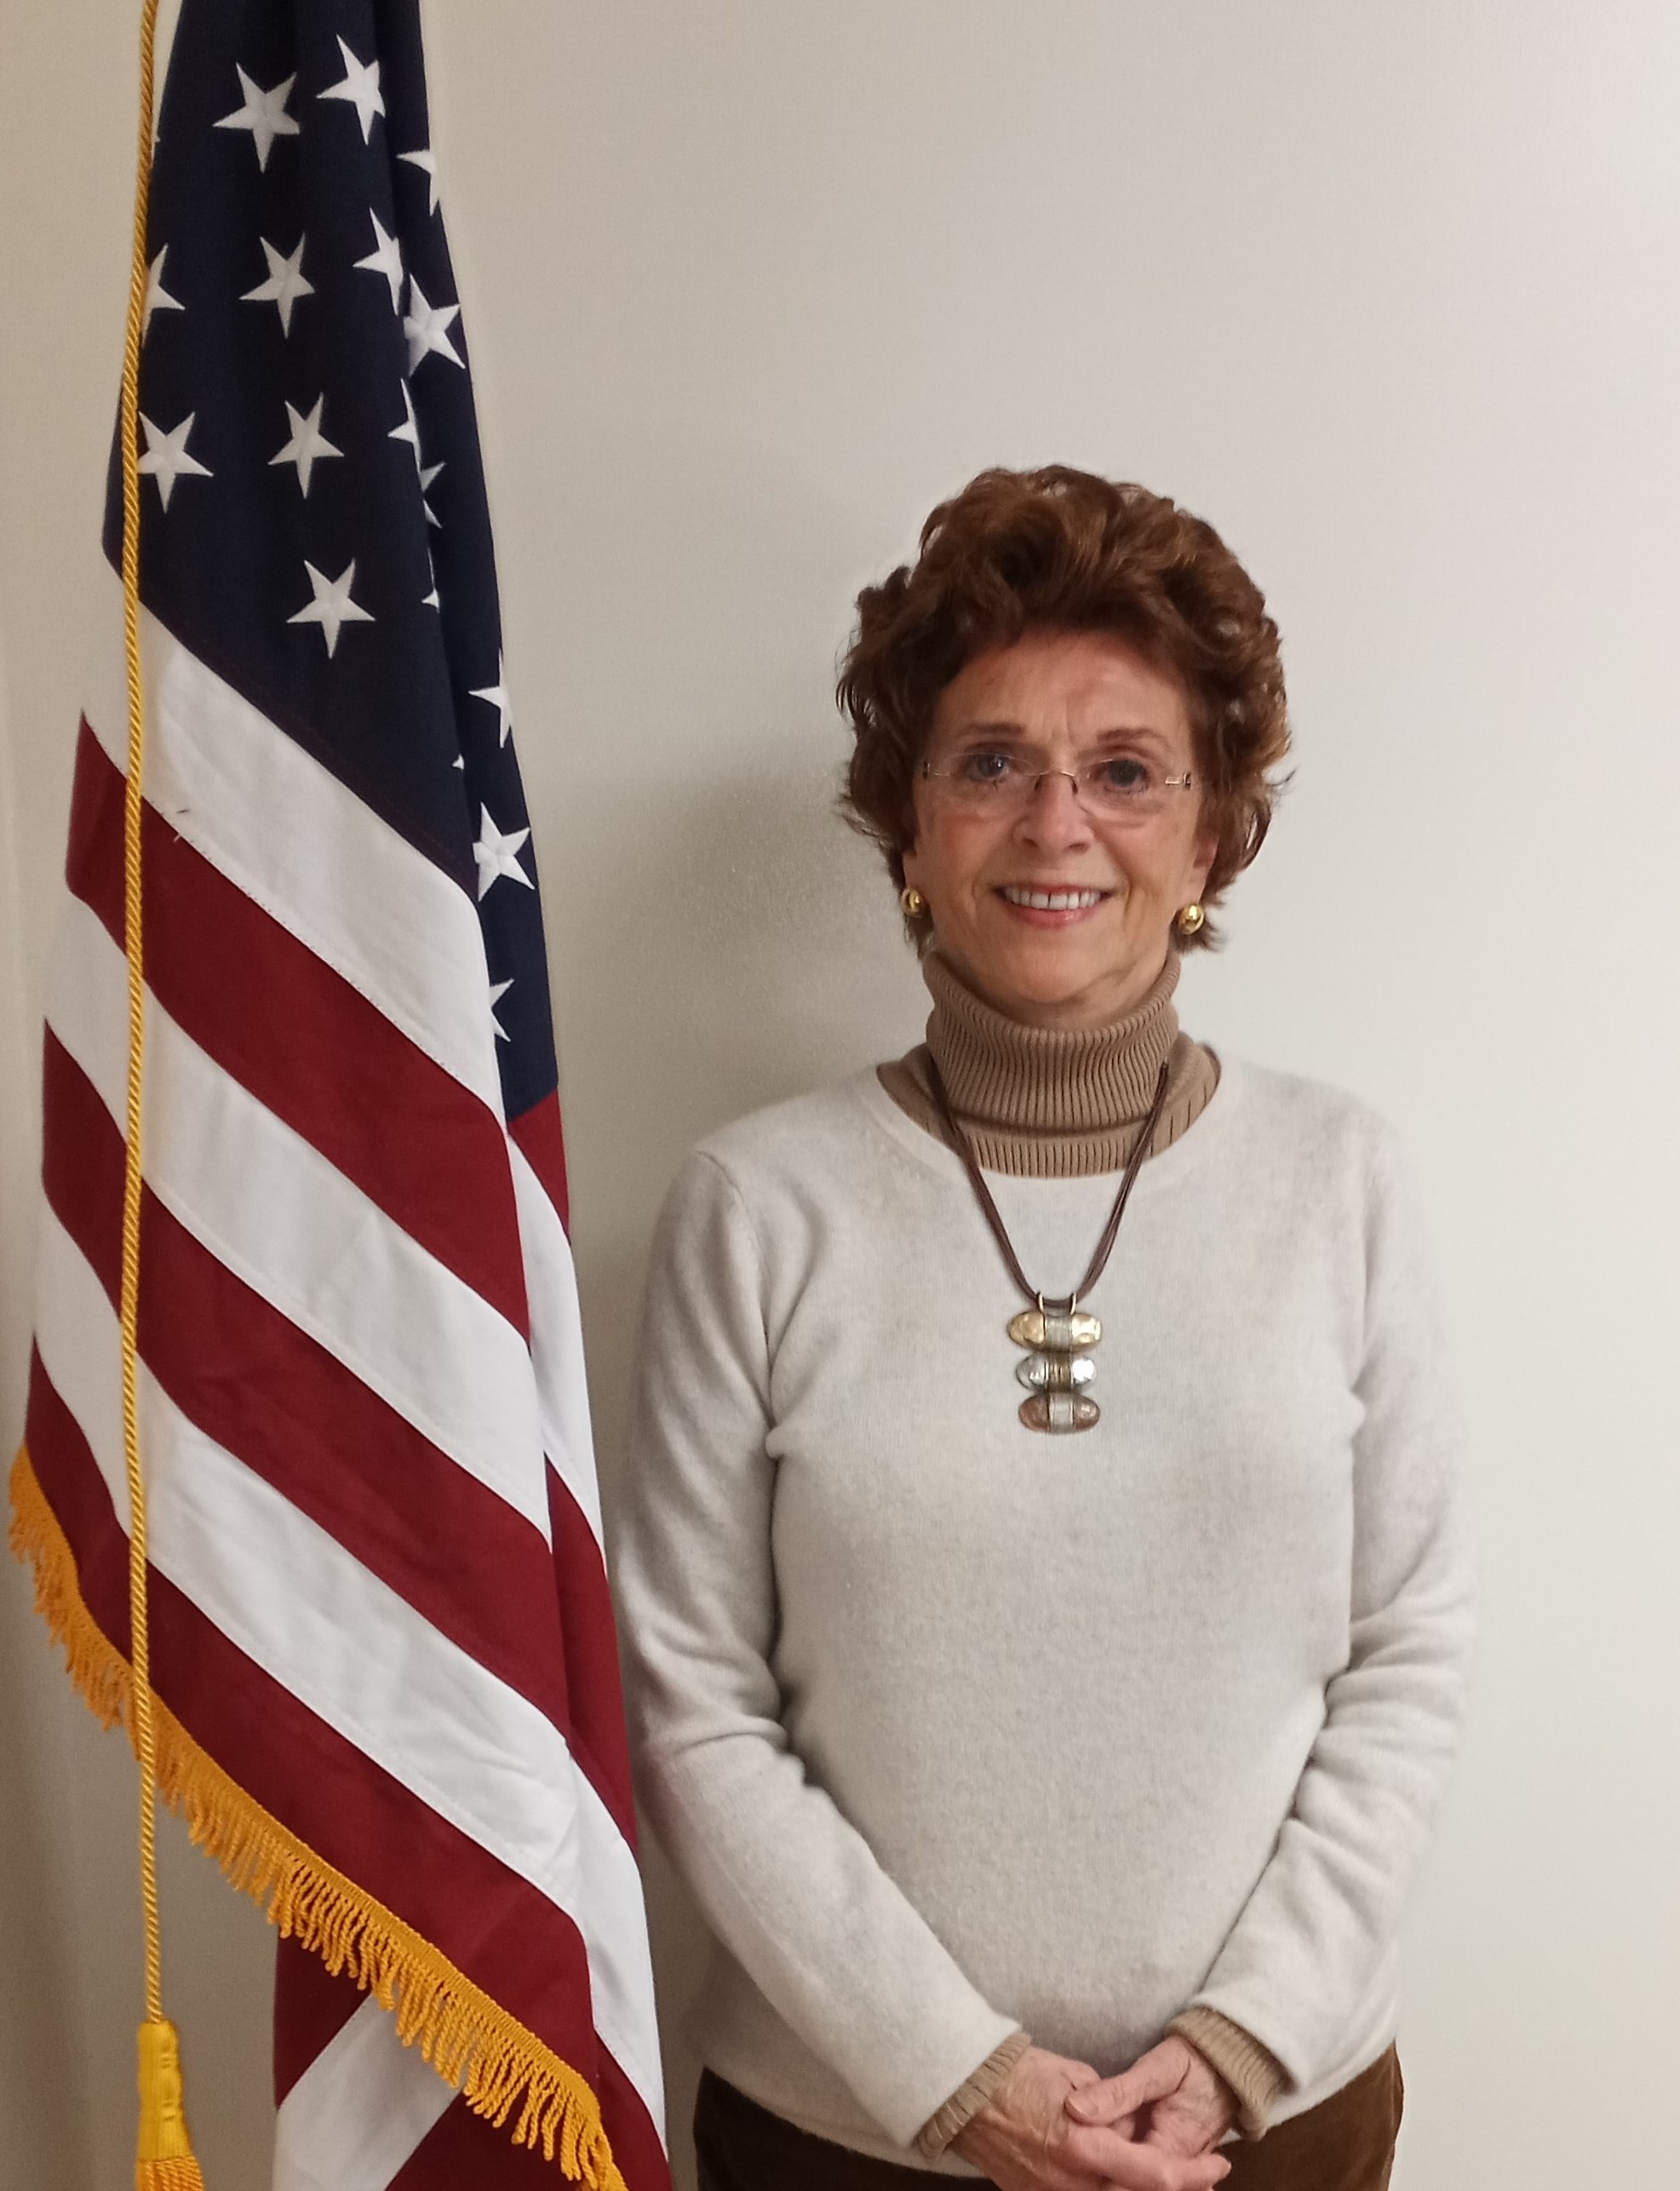 Council Vice-President Karen Roberts